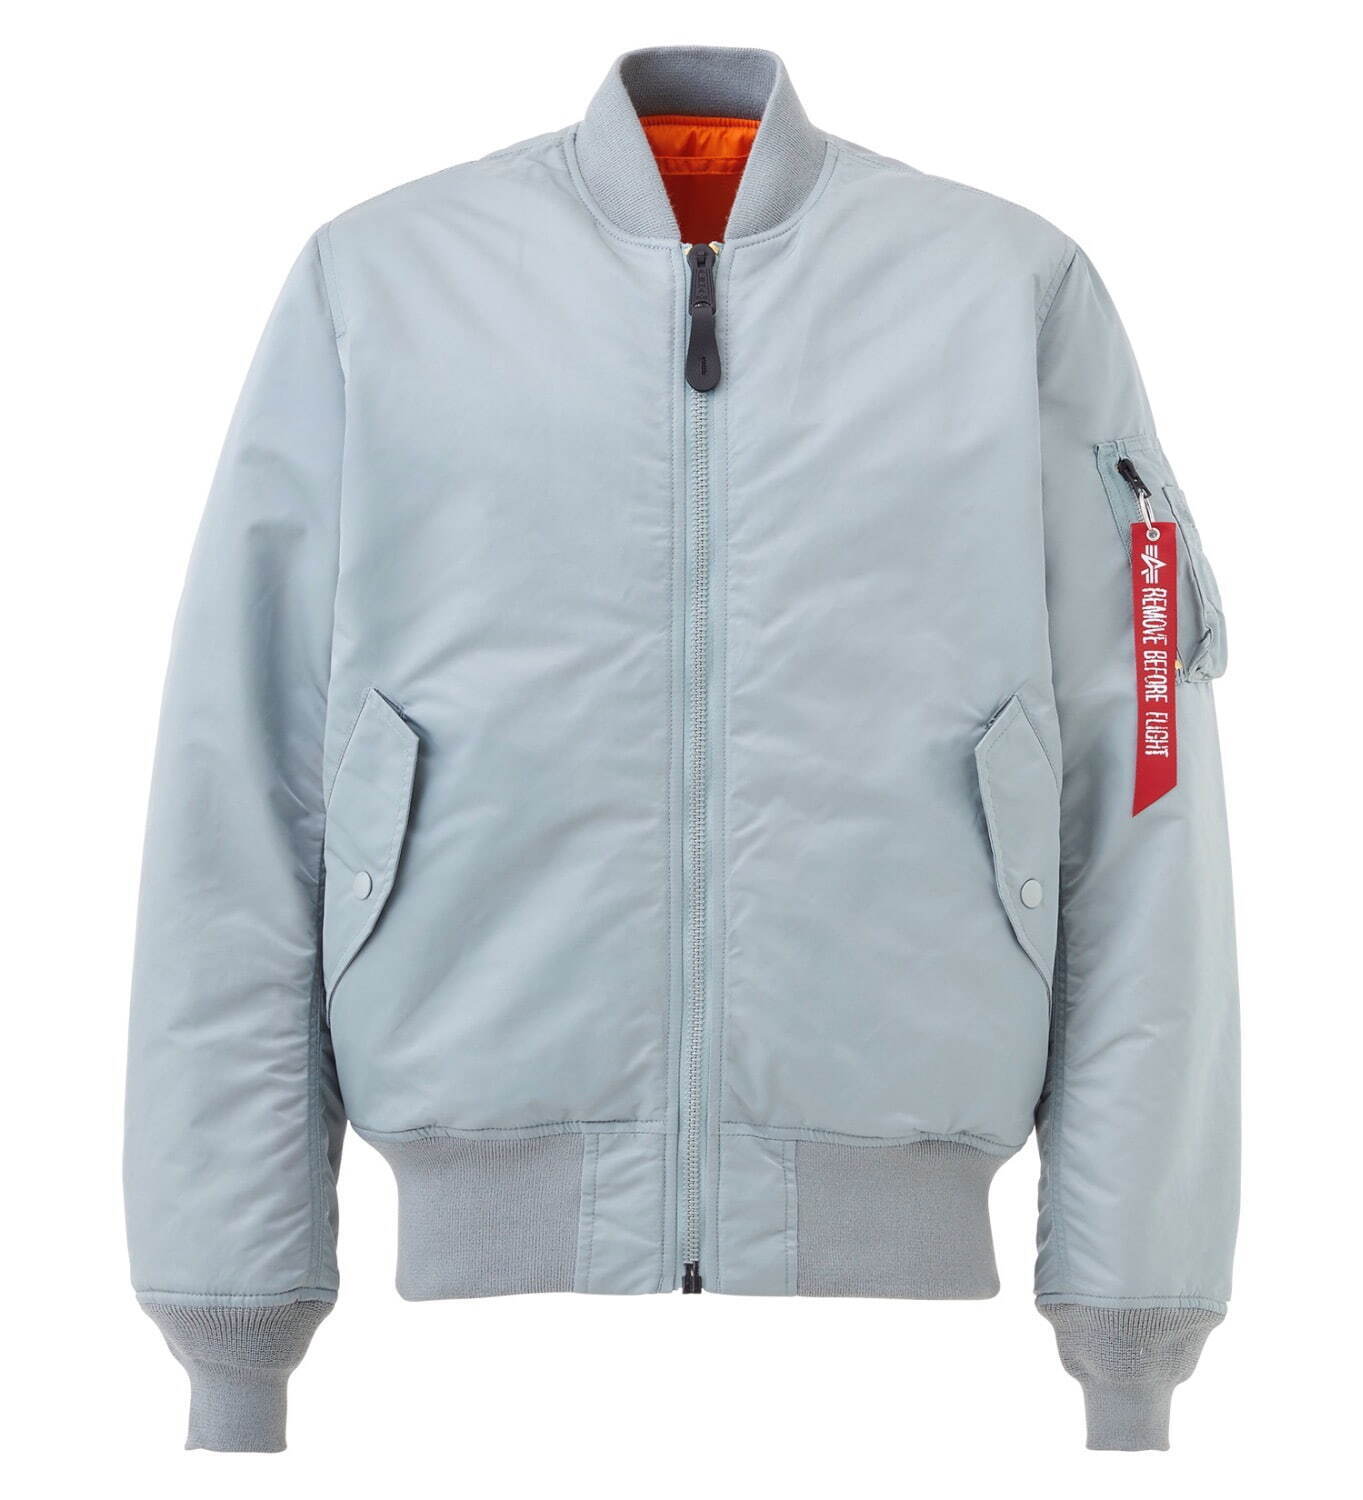 メンズのおすすめジャケット[21秋冬]人気ブランドのデニムジャケット 